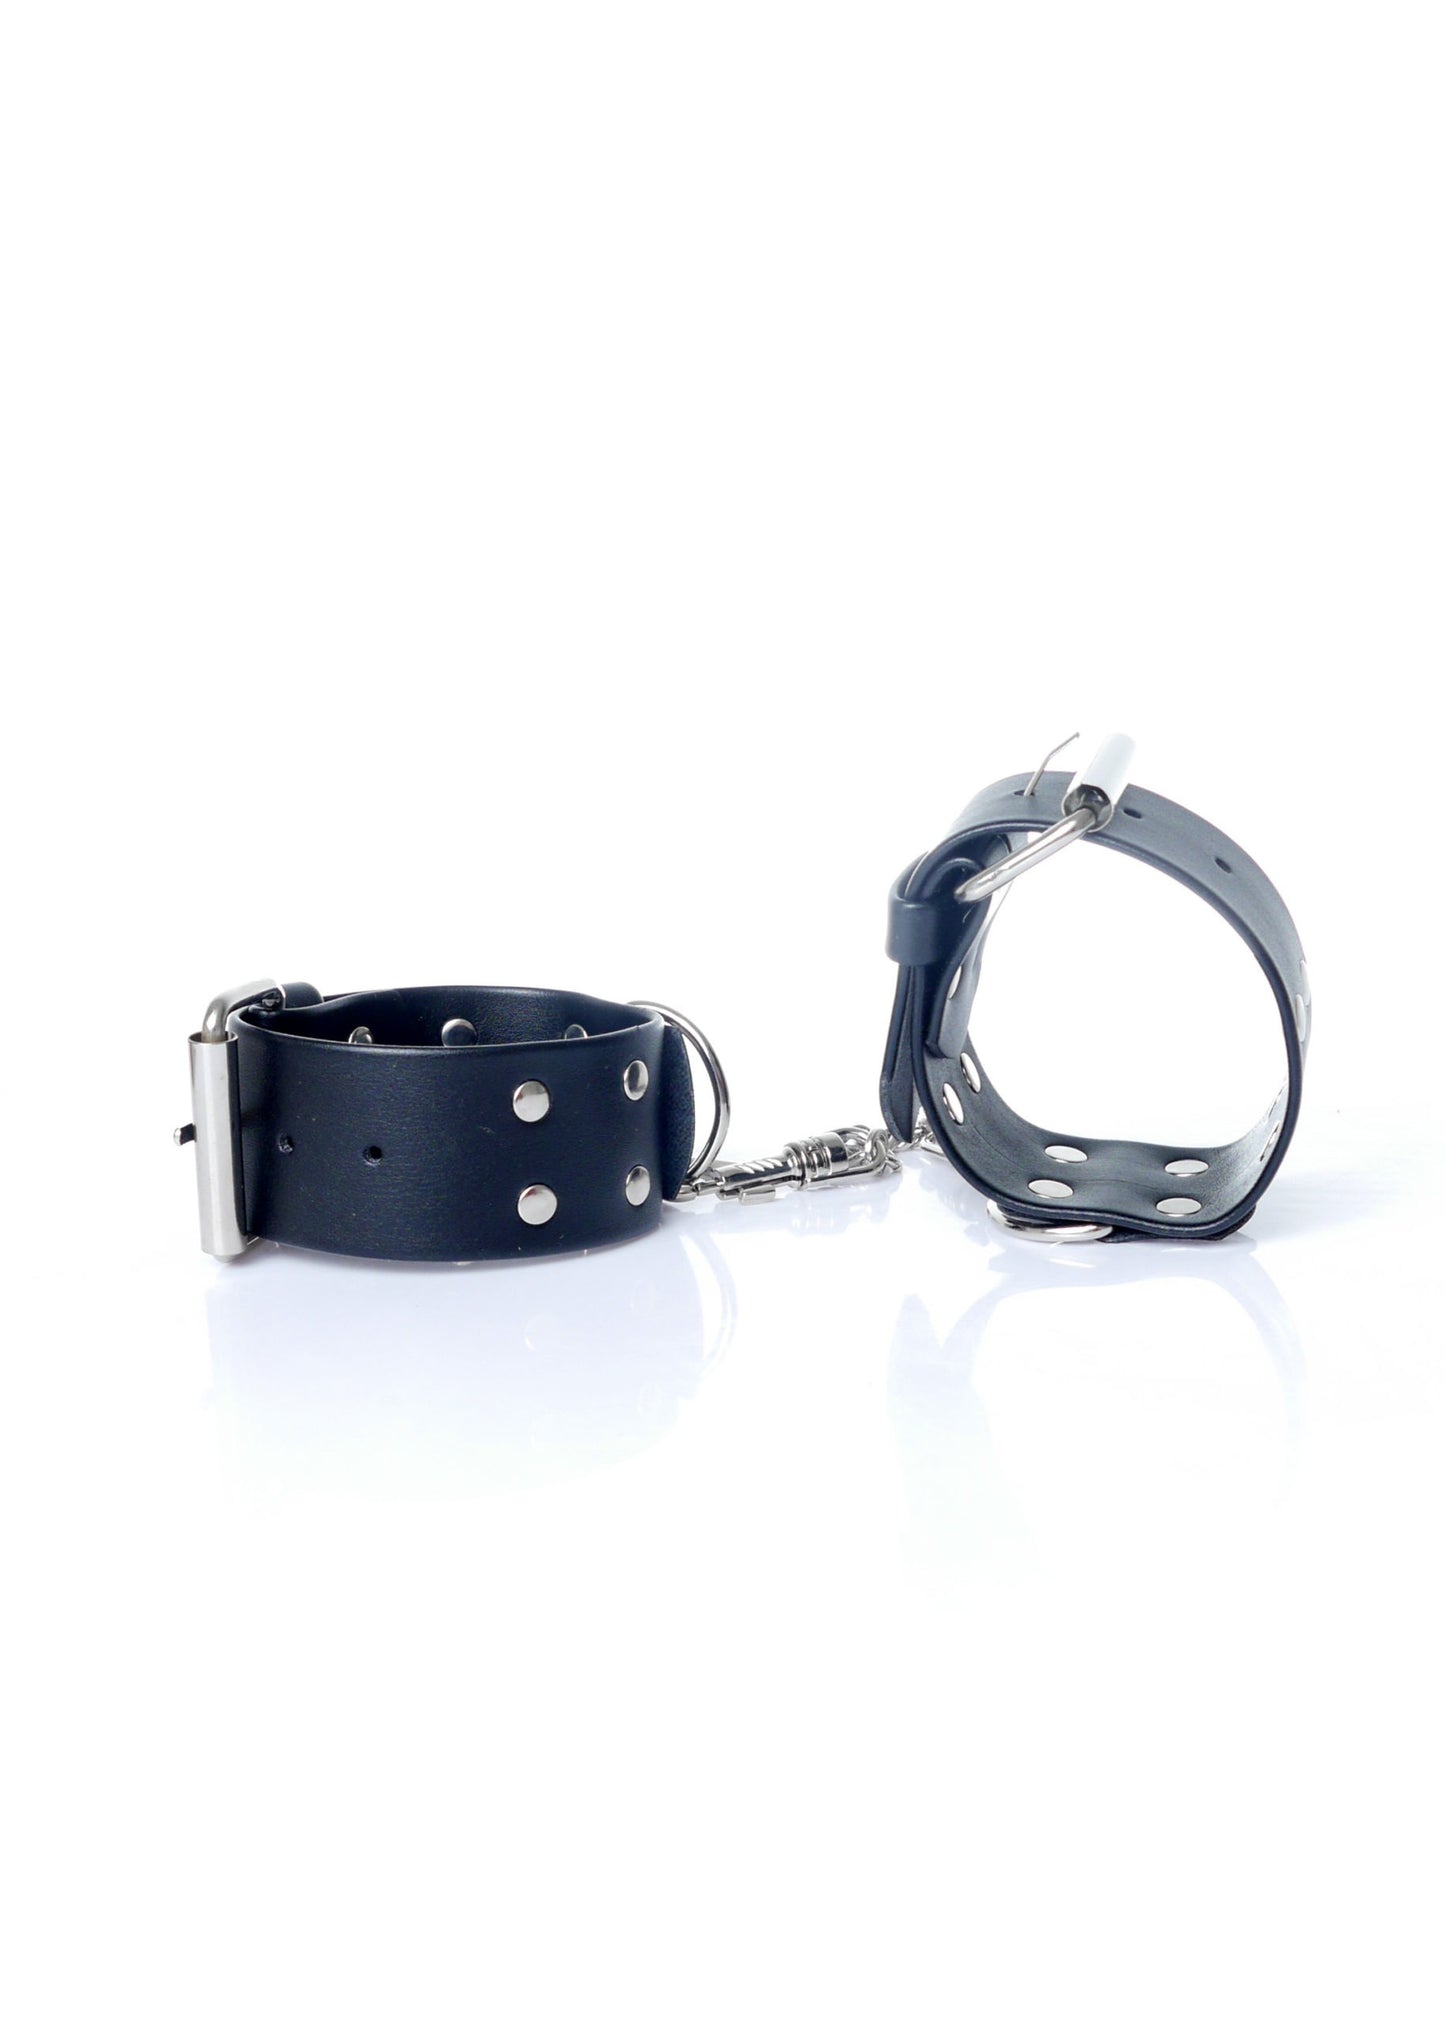 Bossoftoys - 33-00092 - Handcuffs - Studs - Wristcuffs - Bondage set